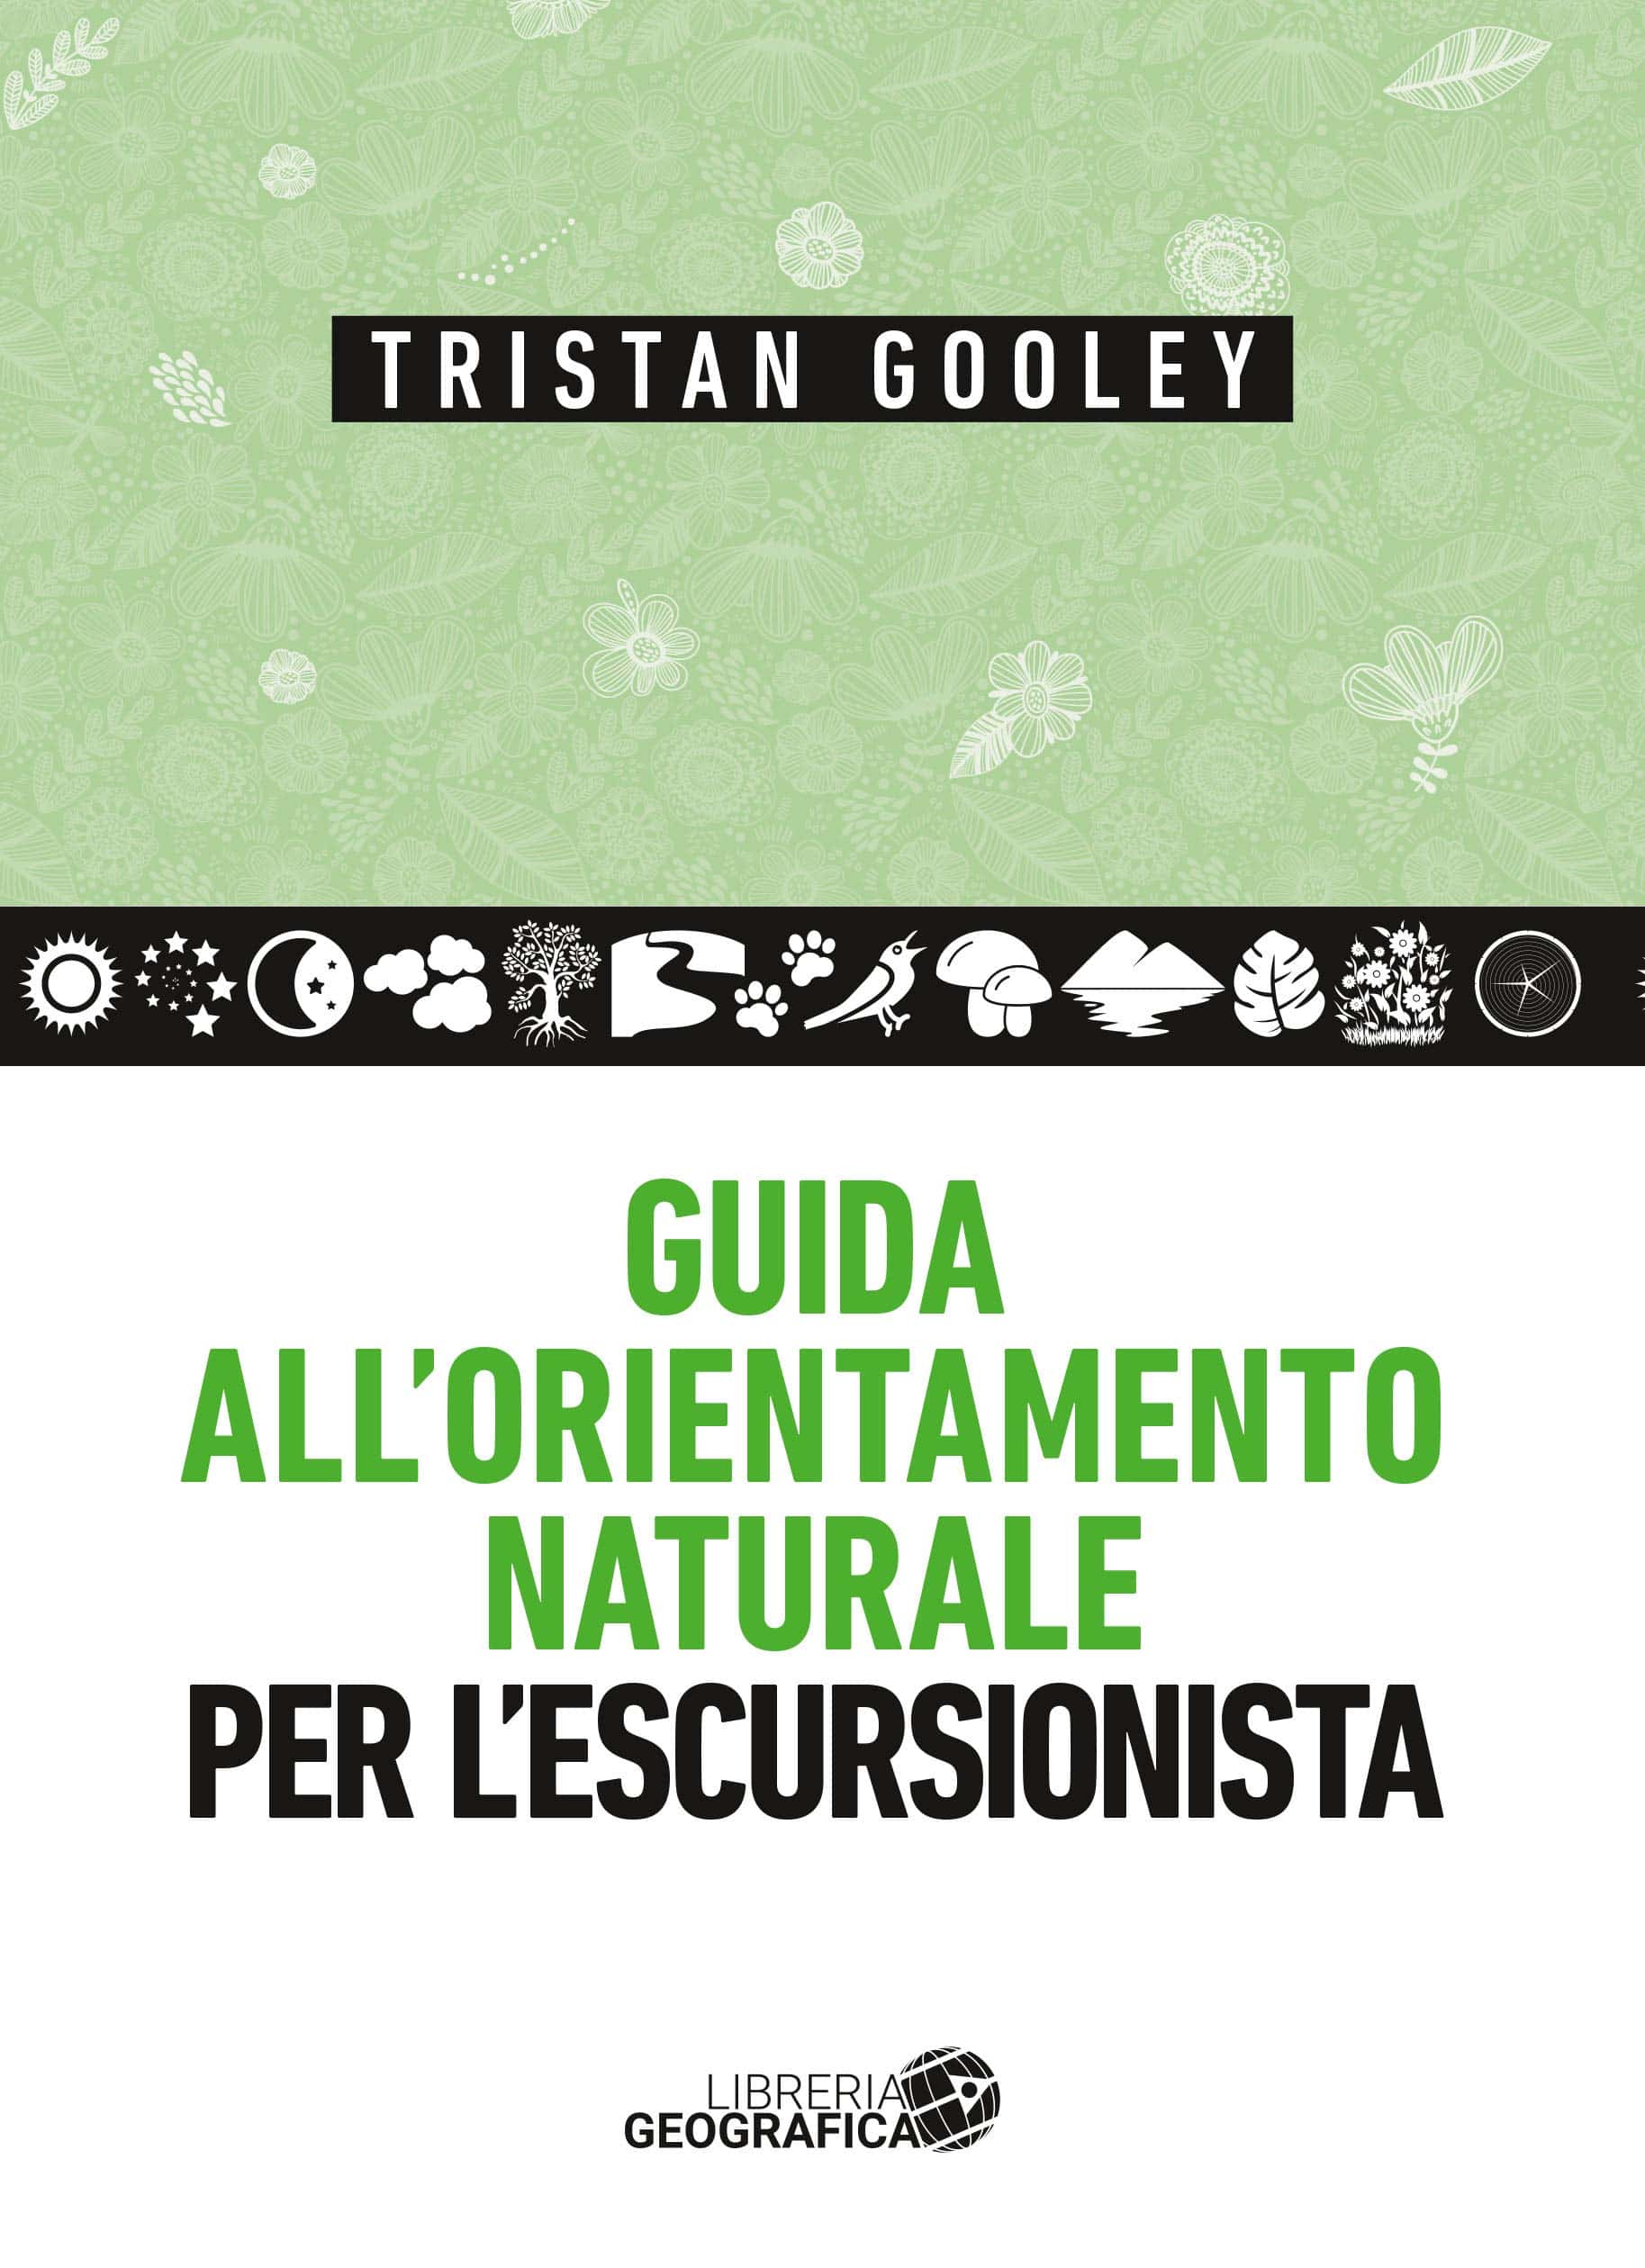 Guida all'orientamento naturale per l'escursionista - Tristan Gooley (Libreria Geografica)